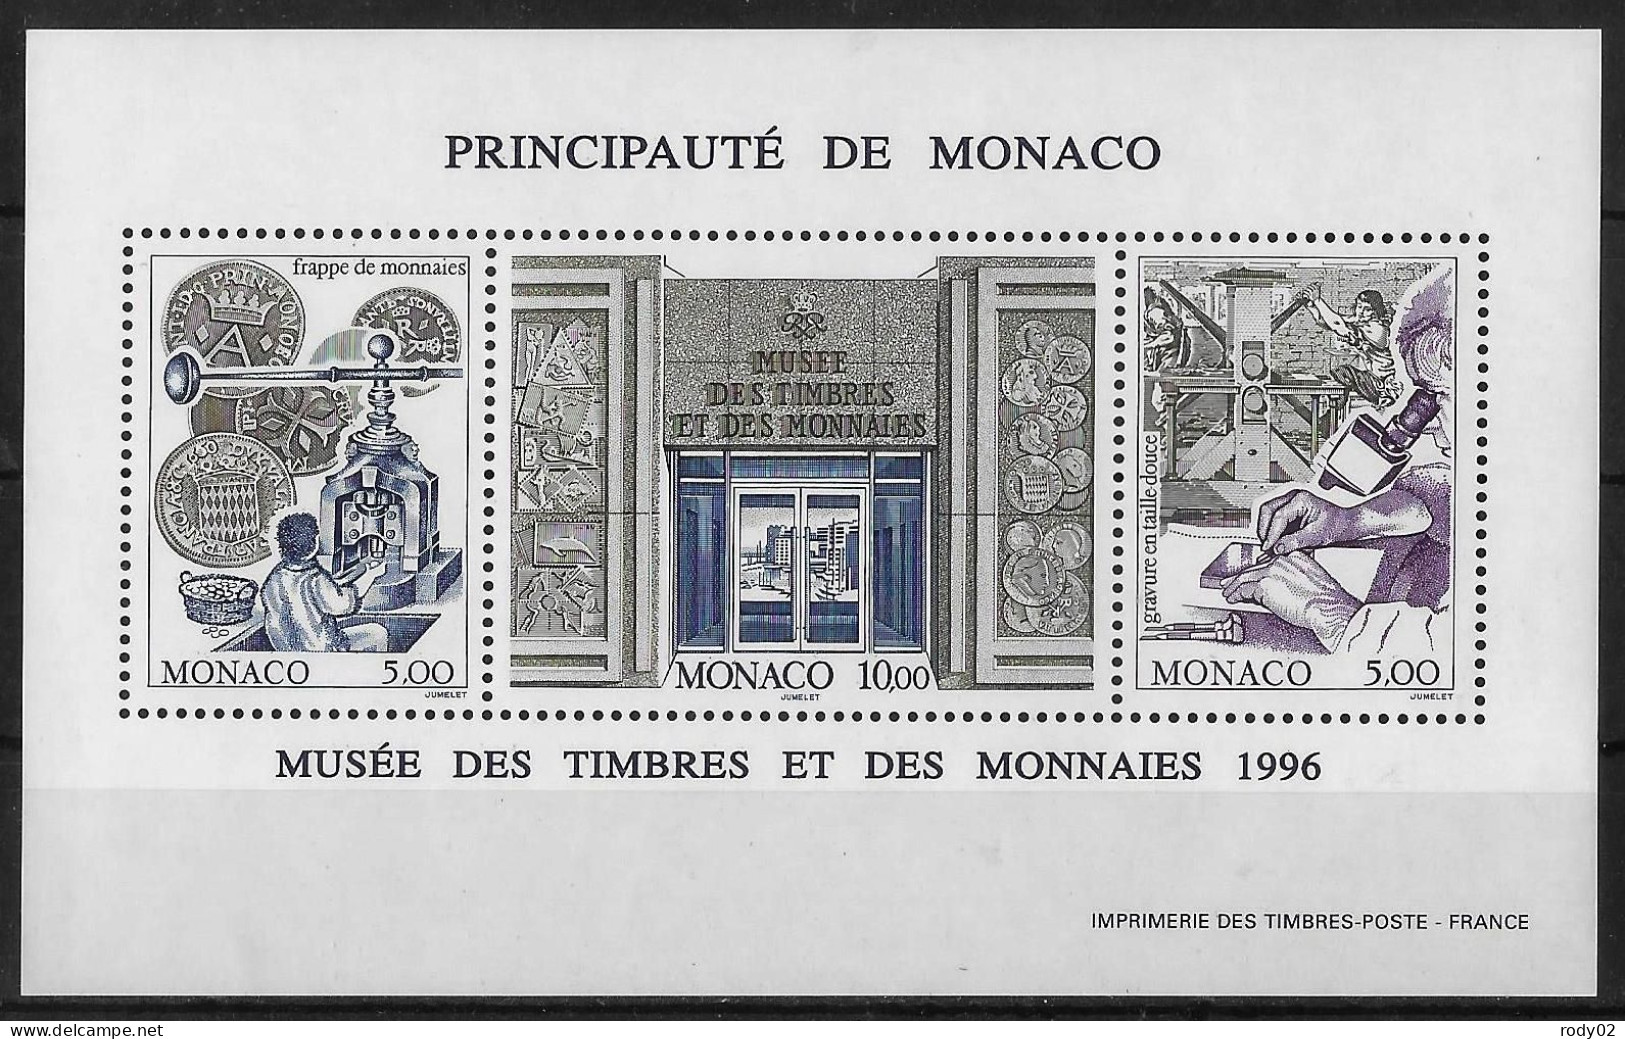 MONACO - ANNEE 1996 - MUSEE DES TIMBRES ET DES MONNAIES - BF 73 - NEUF** MNH - Blocs